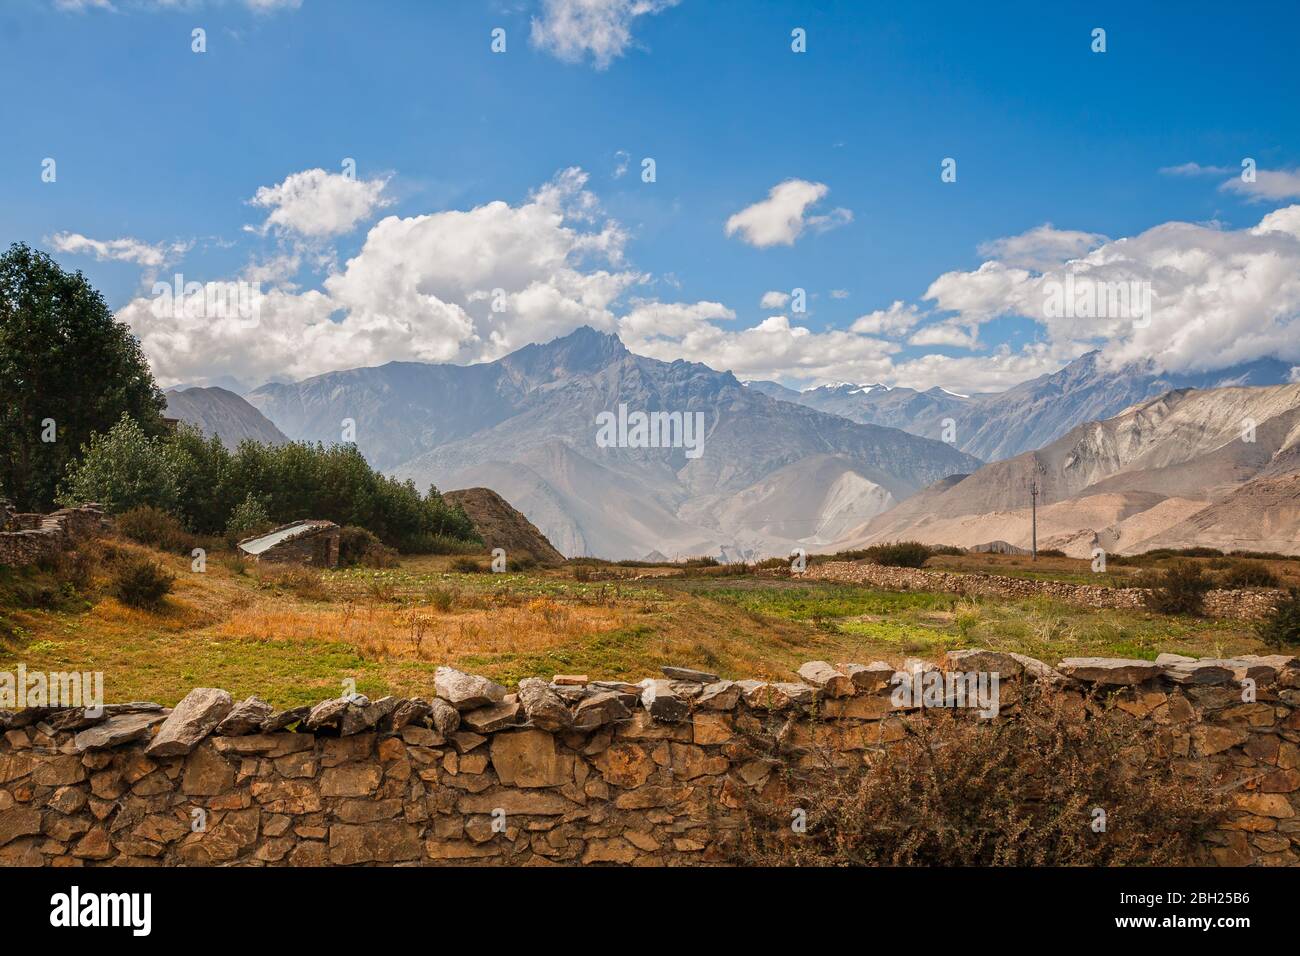 Paysage, champs et jardins de l'Himalaya derrière des clôtures en pierre au pied des montagnes, Basse Mustang, Népal. Banque D'Images